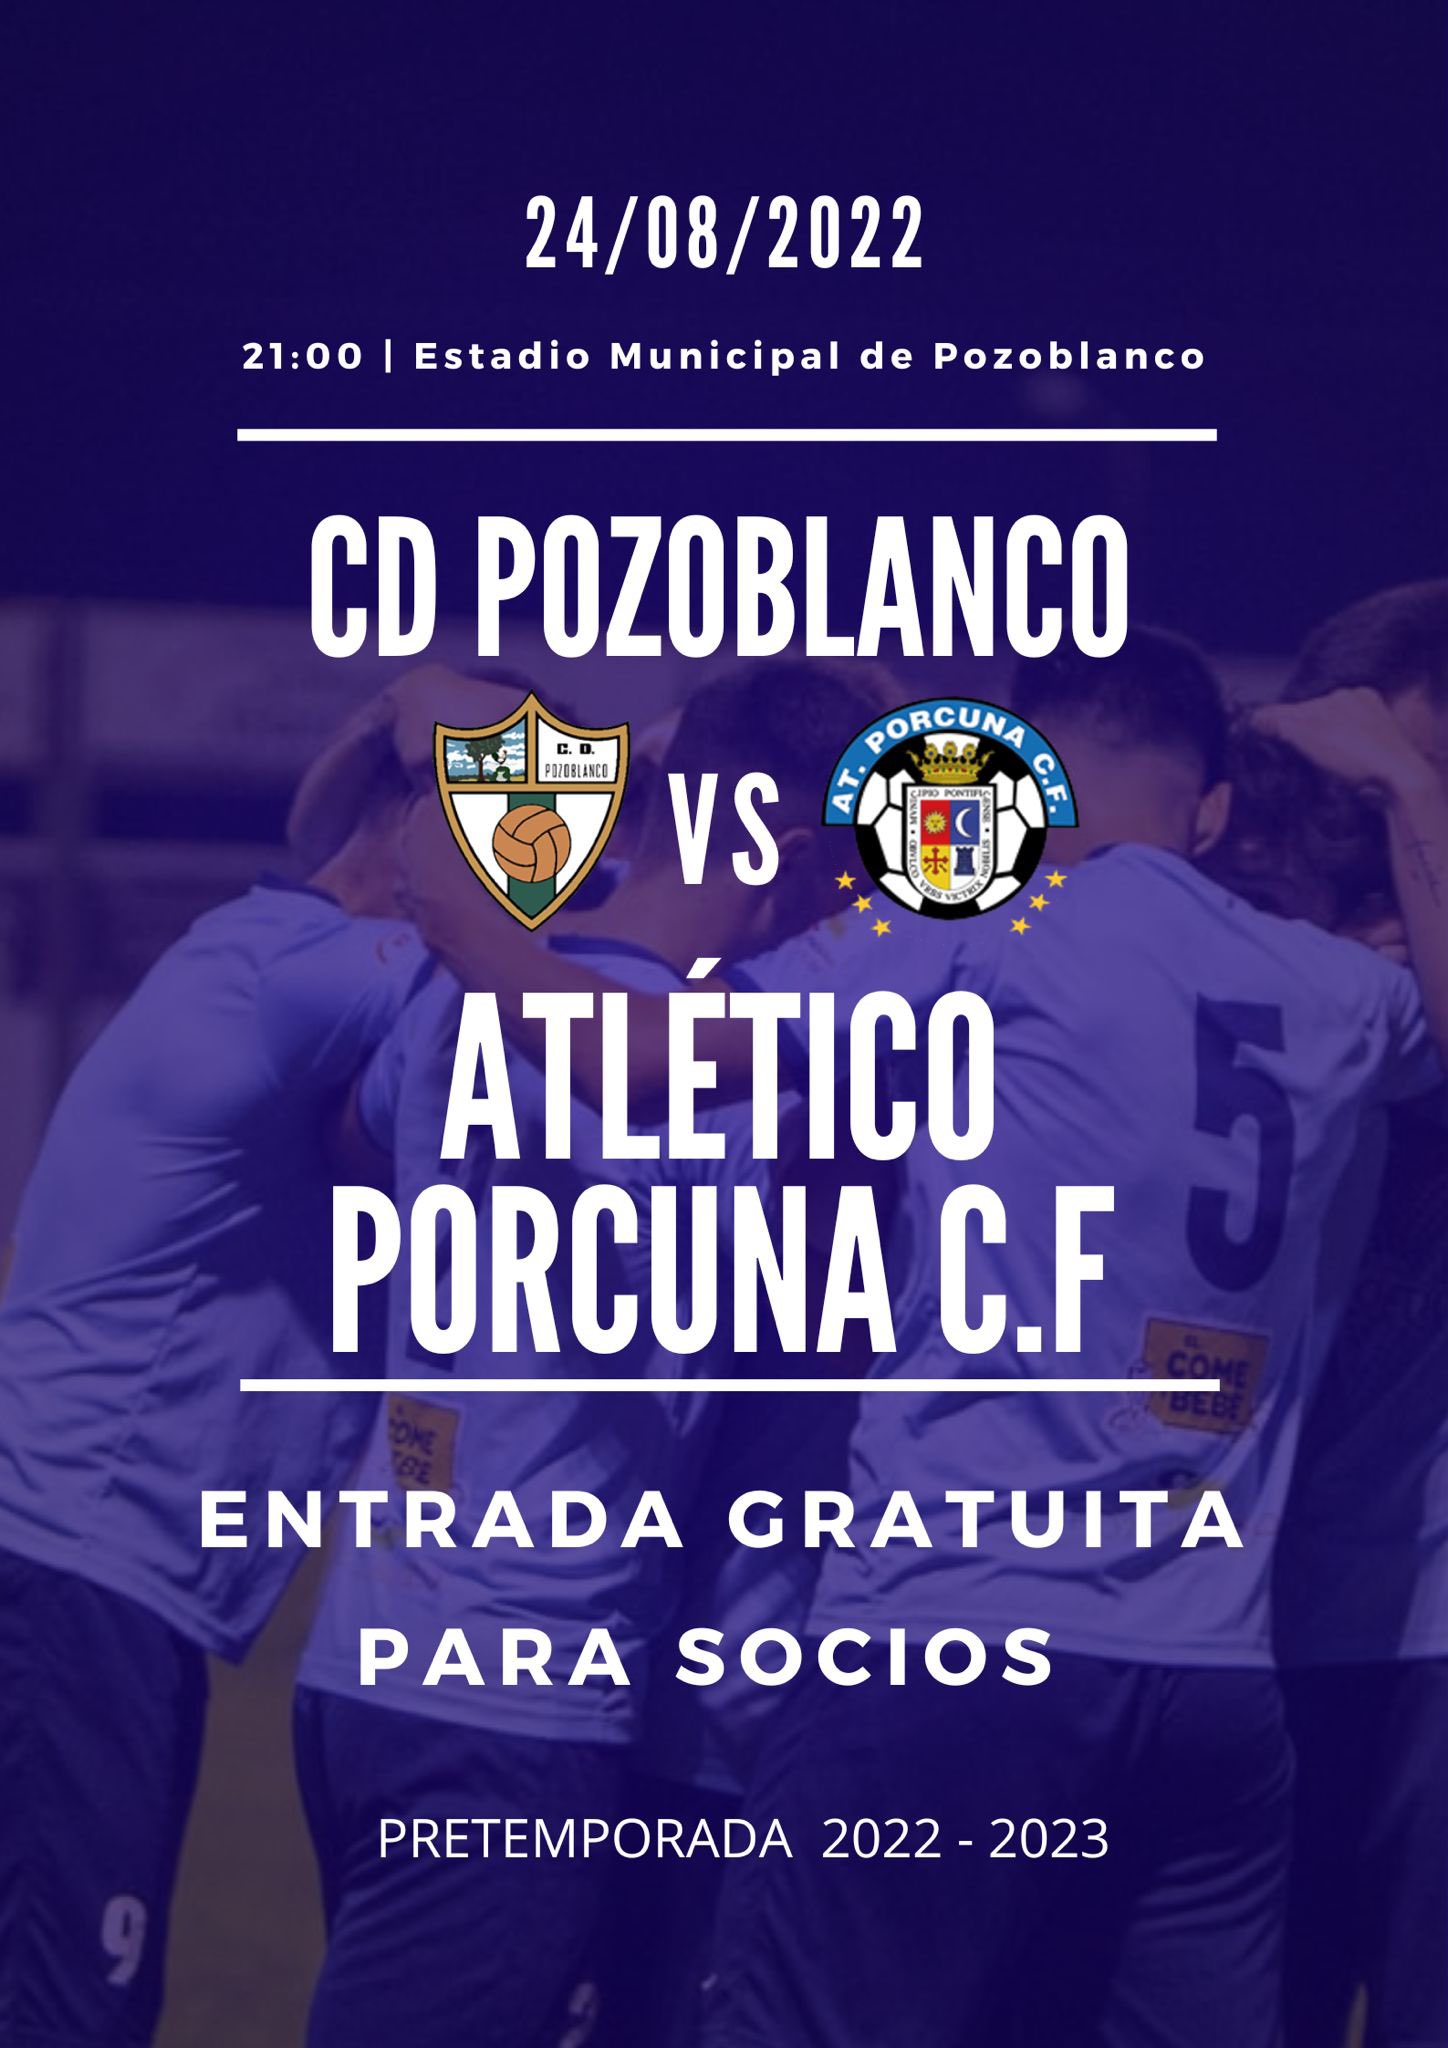 El Atlético Porcuna continúa su pretemporada en Pozoblanco